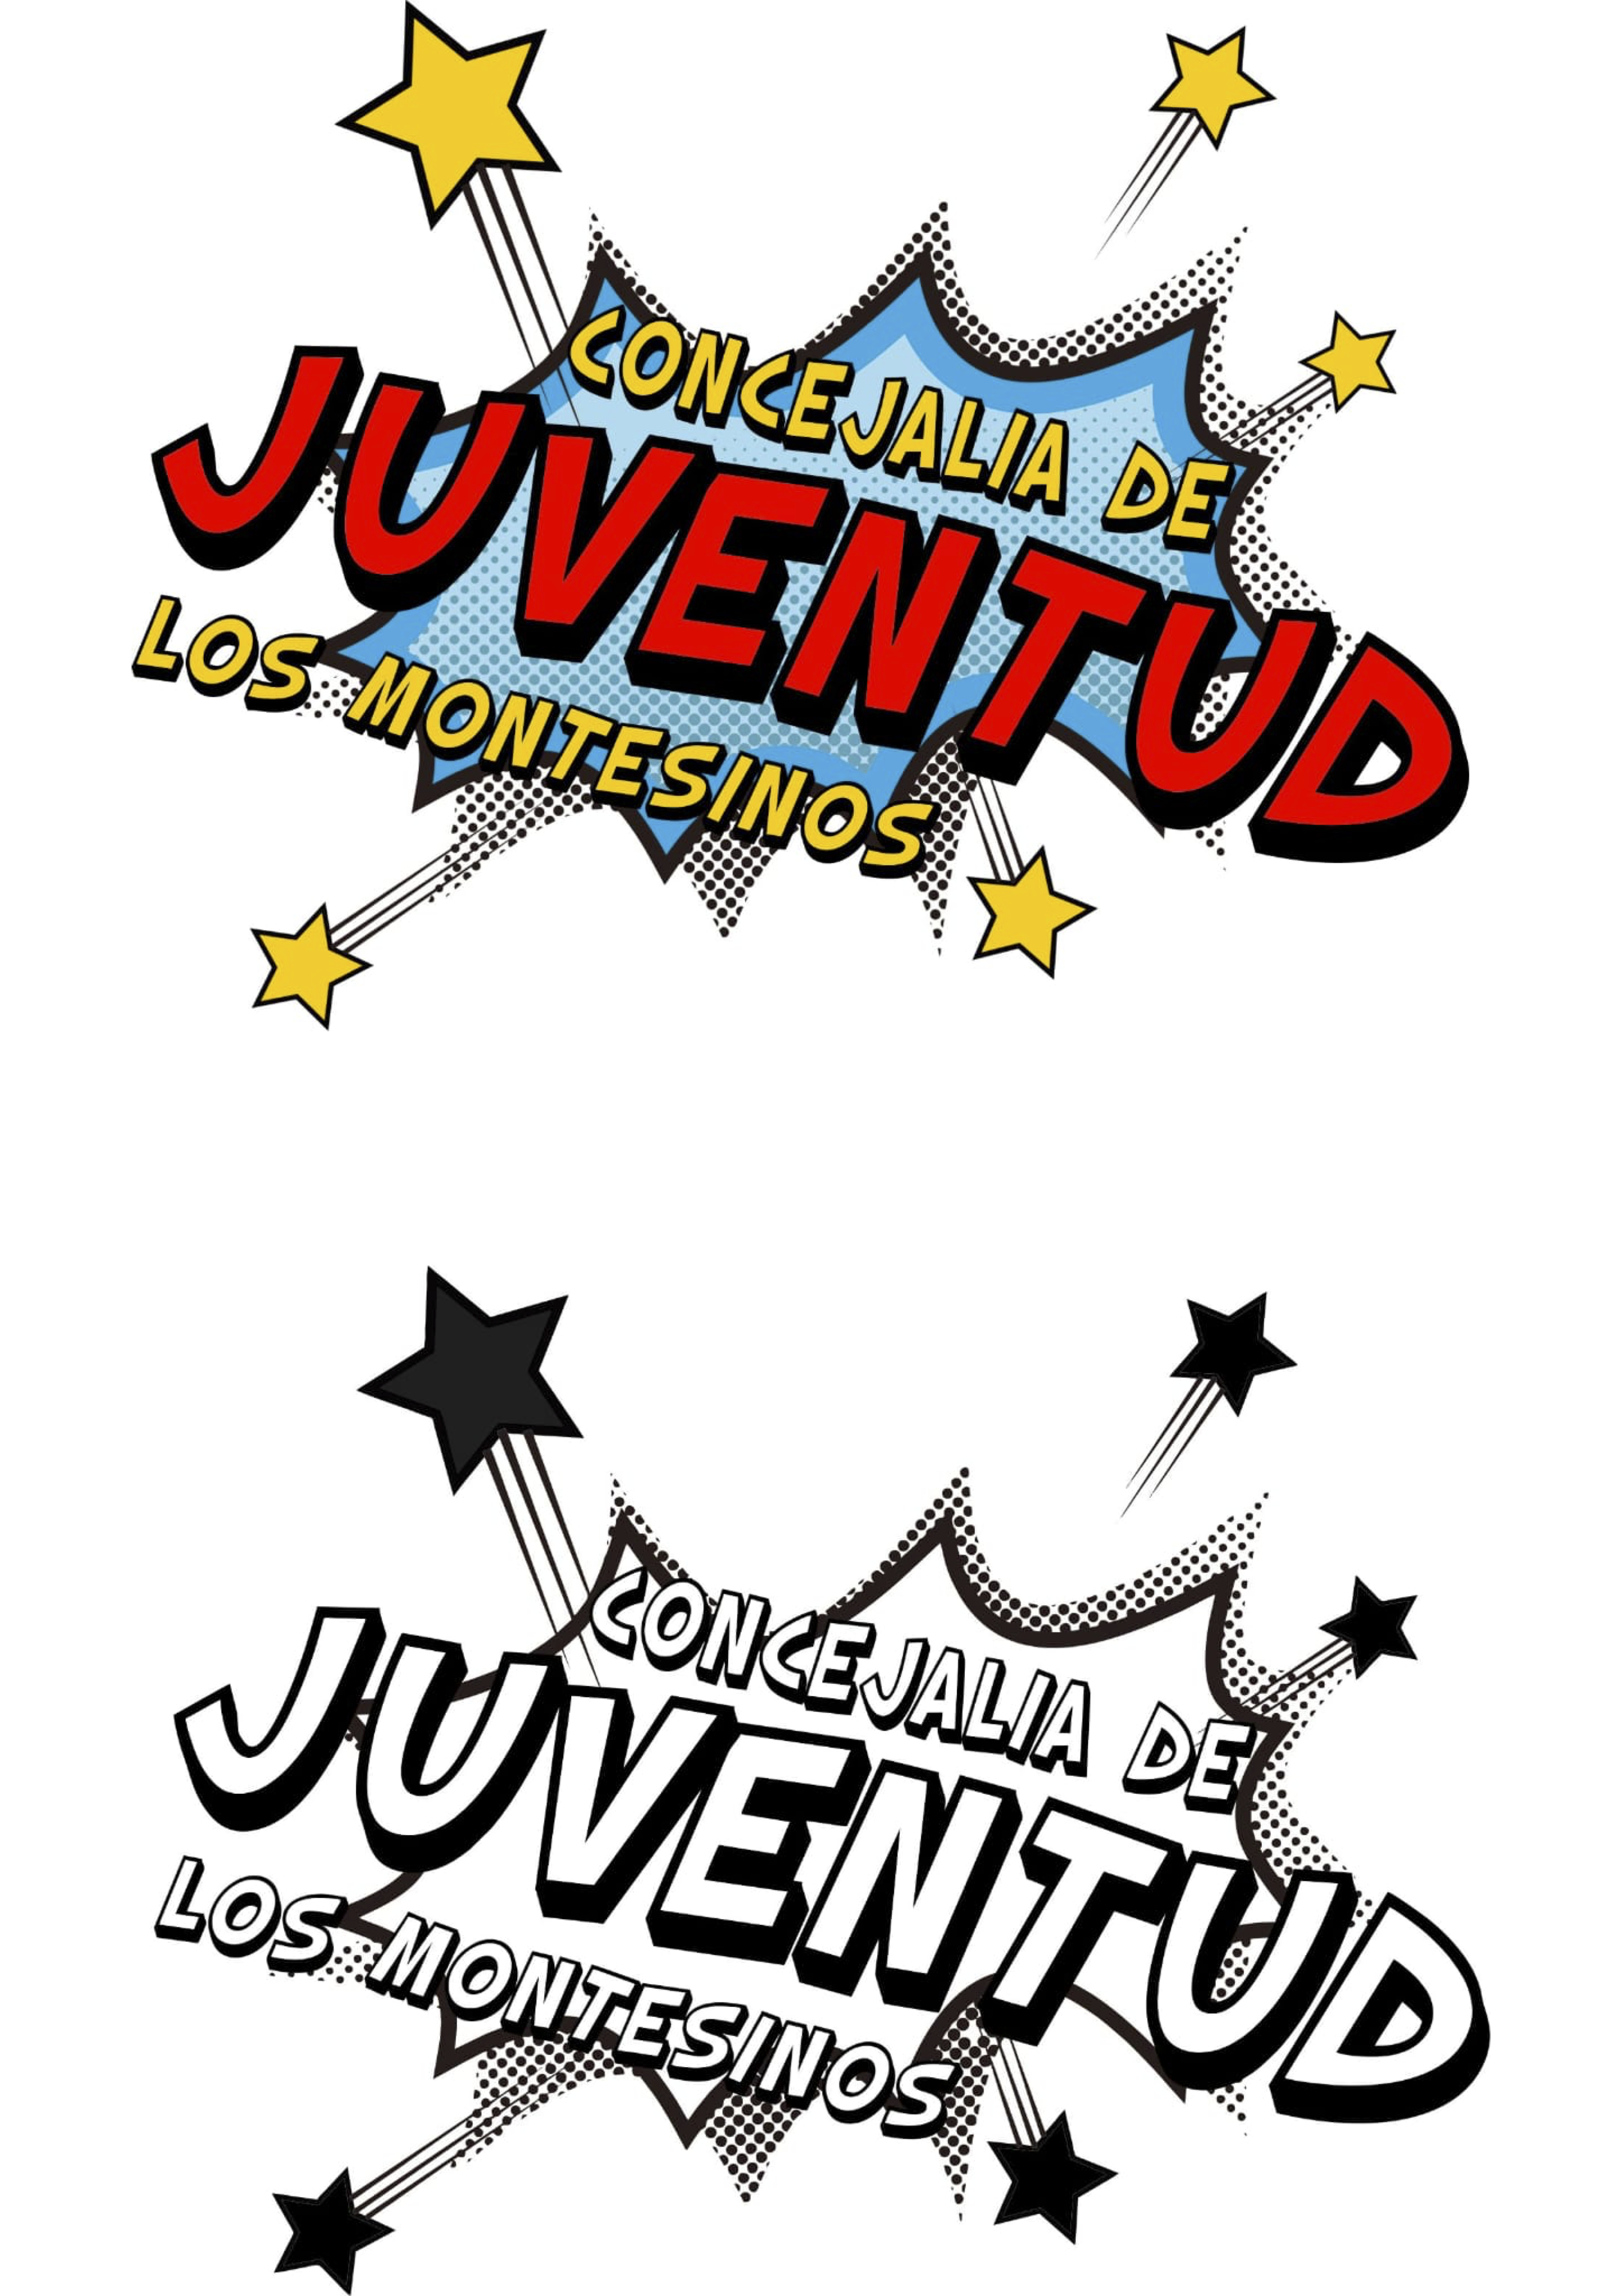 Nuevo logo de la Concejalia de juventud. Los Montesinos